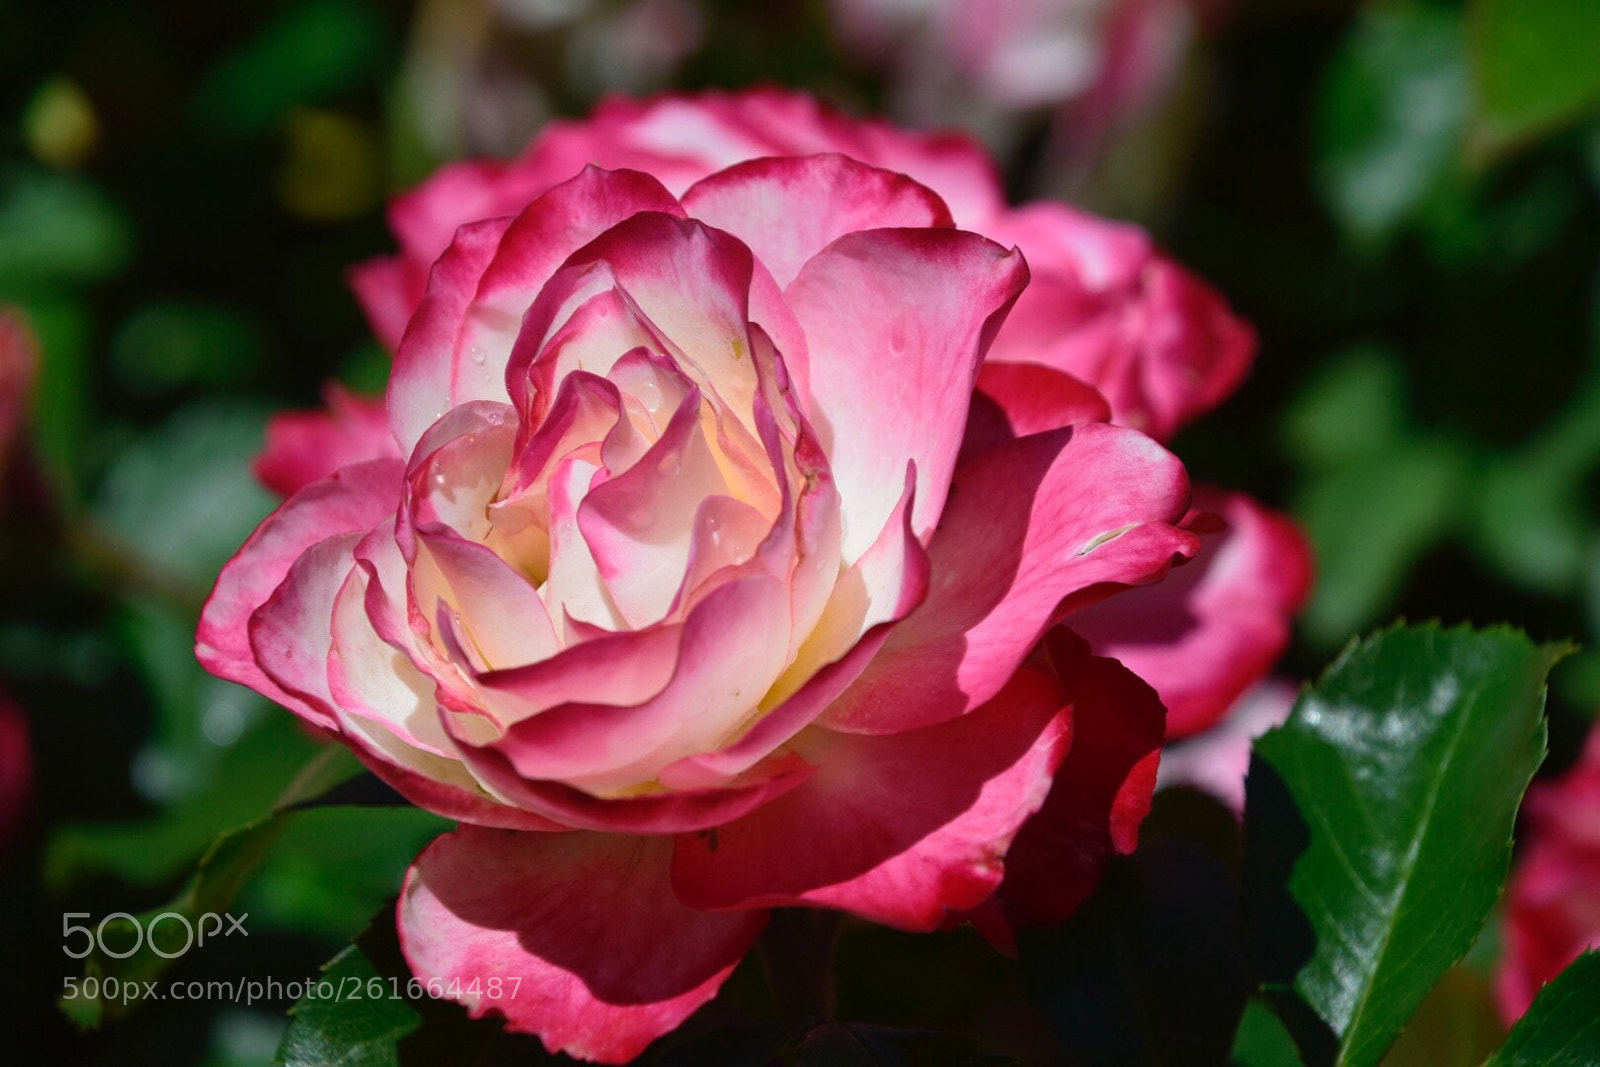 Nikon D5300 sample photo. Beautiful rose photography